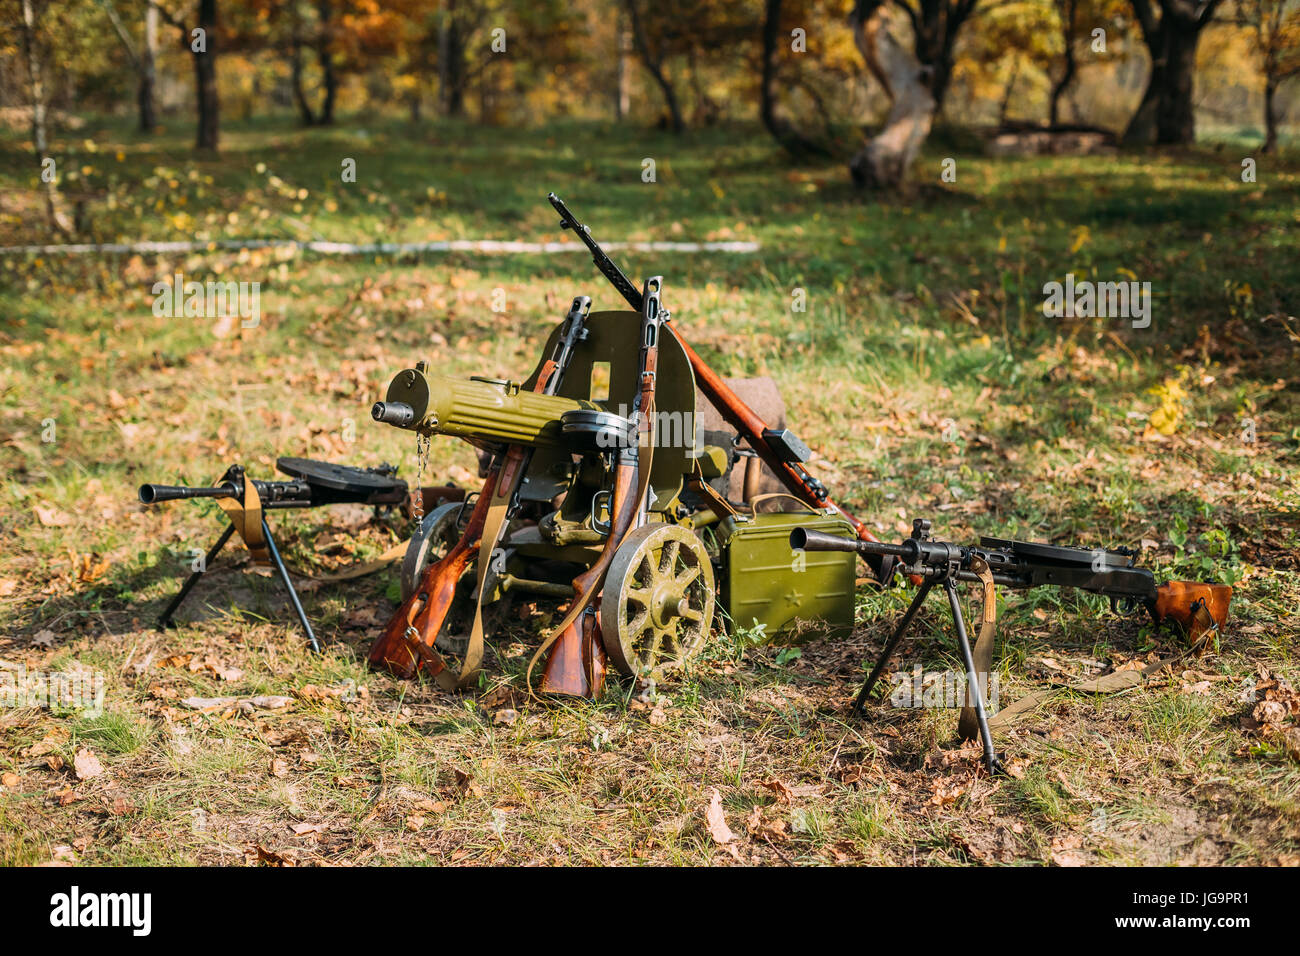 Sowjetische russische militärische Munition des zweiten Weltkriegs am Boden. Degtyaryov Maschinengewehr oder DP-28, Maxim-Maschinengewehr Modell 1910/30 auf einem fahrbaren Vladimi Stockfoto